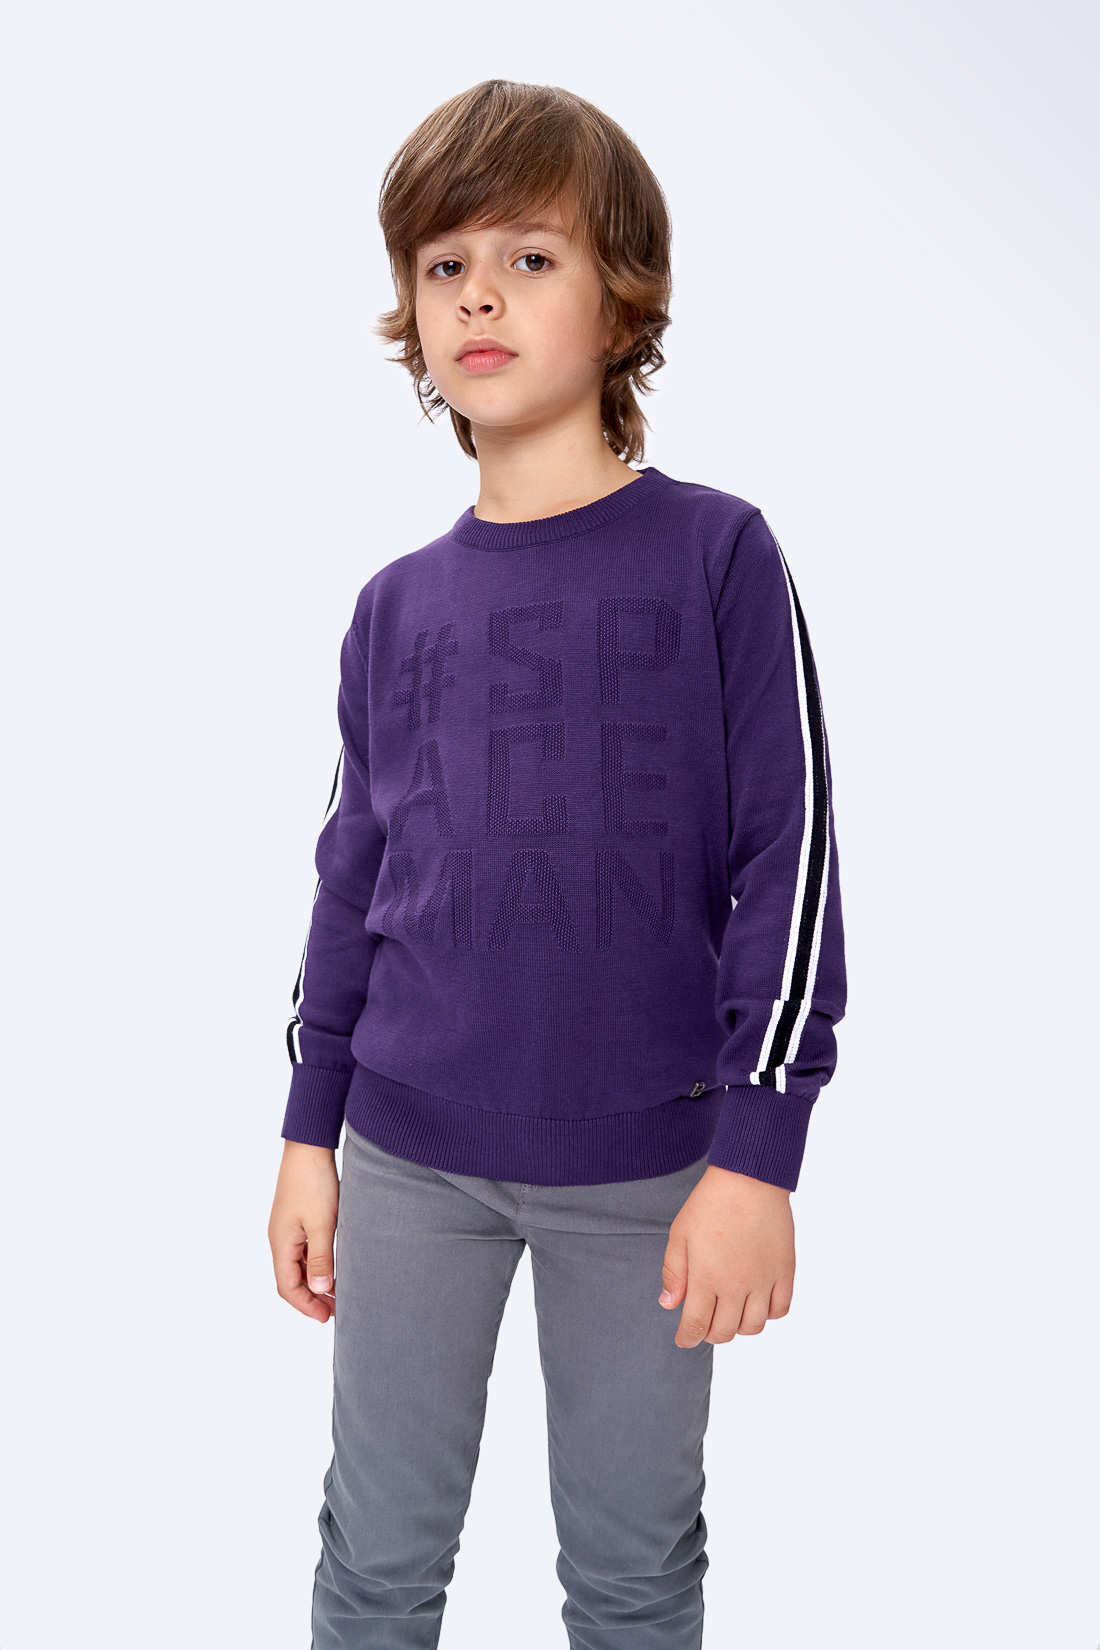 Джемпер для мальчика (арт. baon BK639503), размер 146, цвет фиолетовый Джемпер для мальчика (арт. baon BK639503) - фото 1